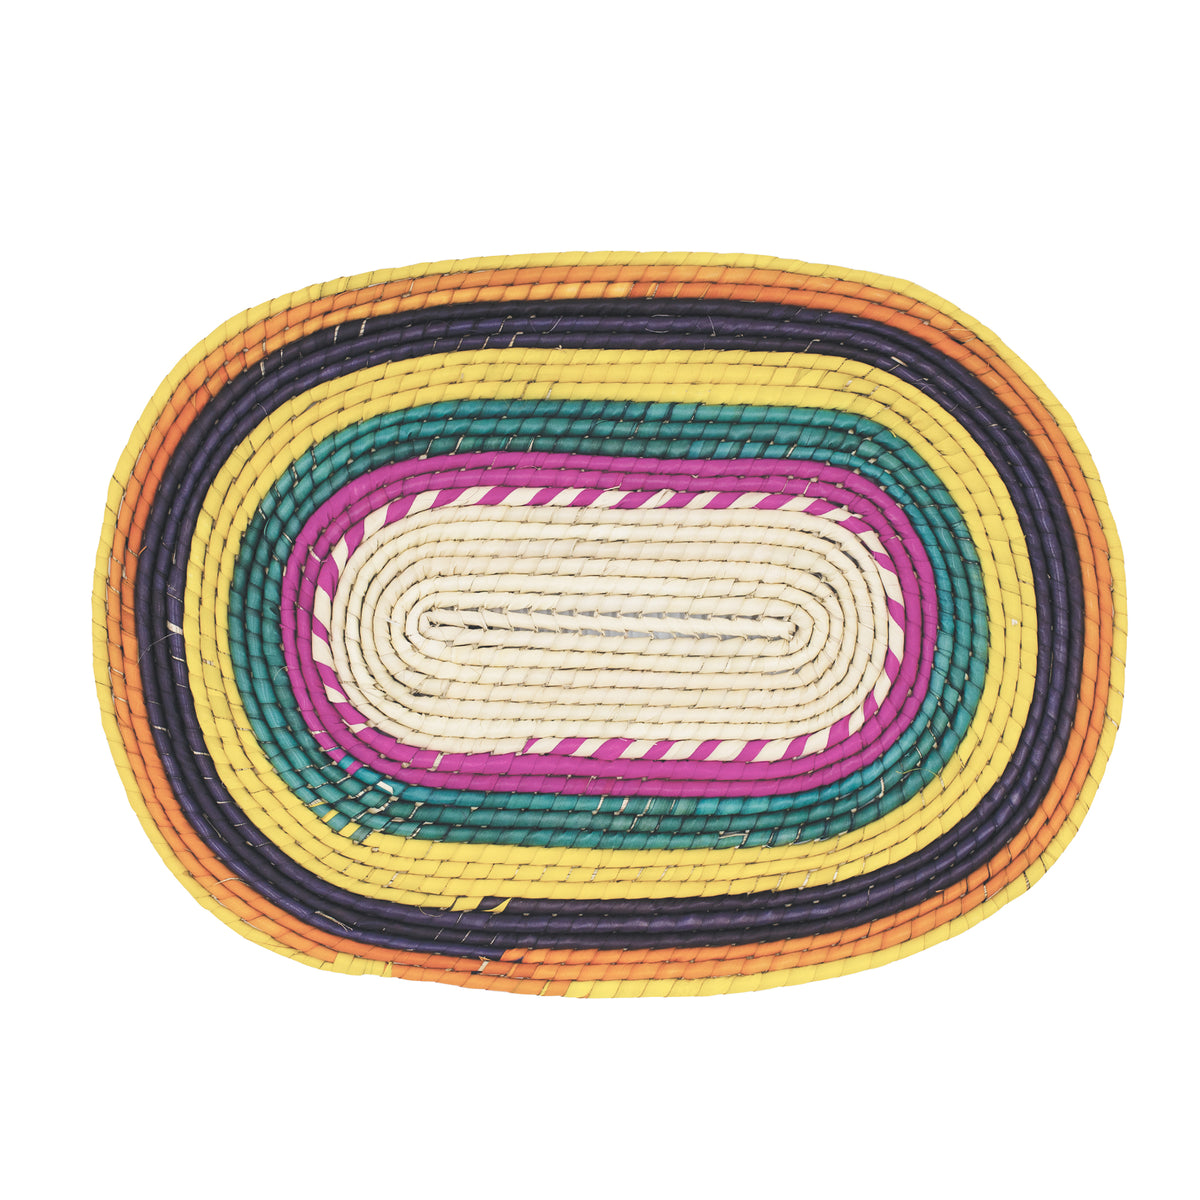 Artisan Hand Crochet Pattern Placemat (BSH5005)